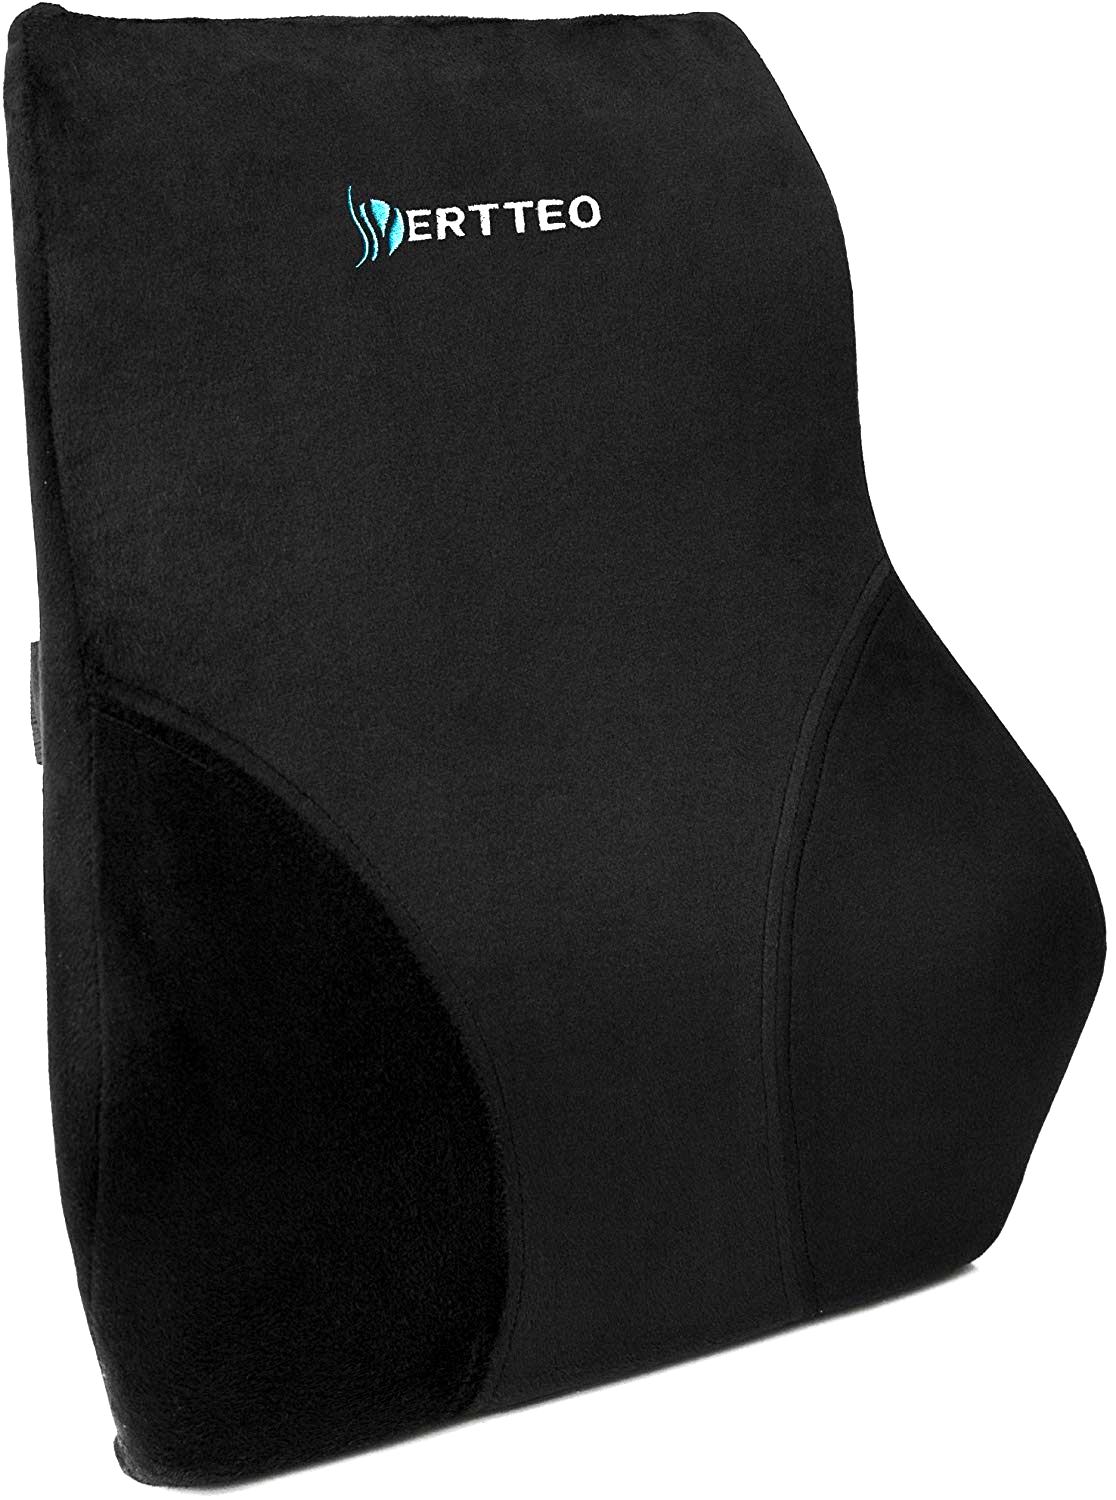 Vertteo Full Lumbar Back Support Pillow